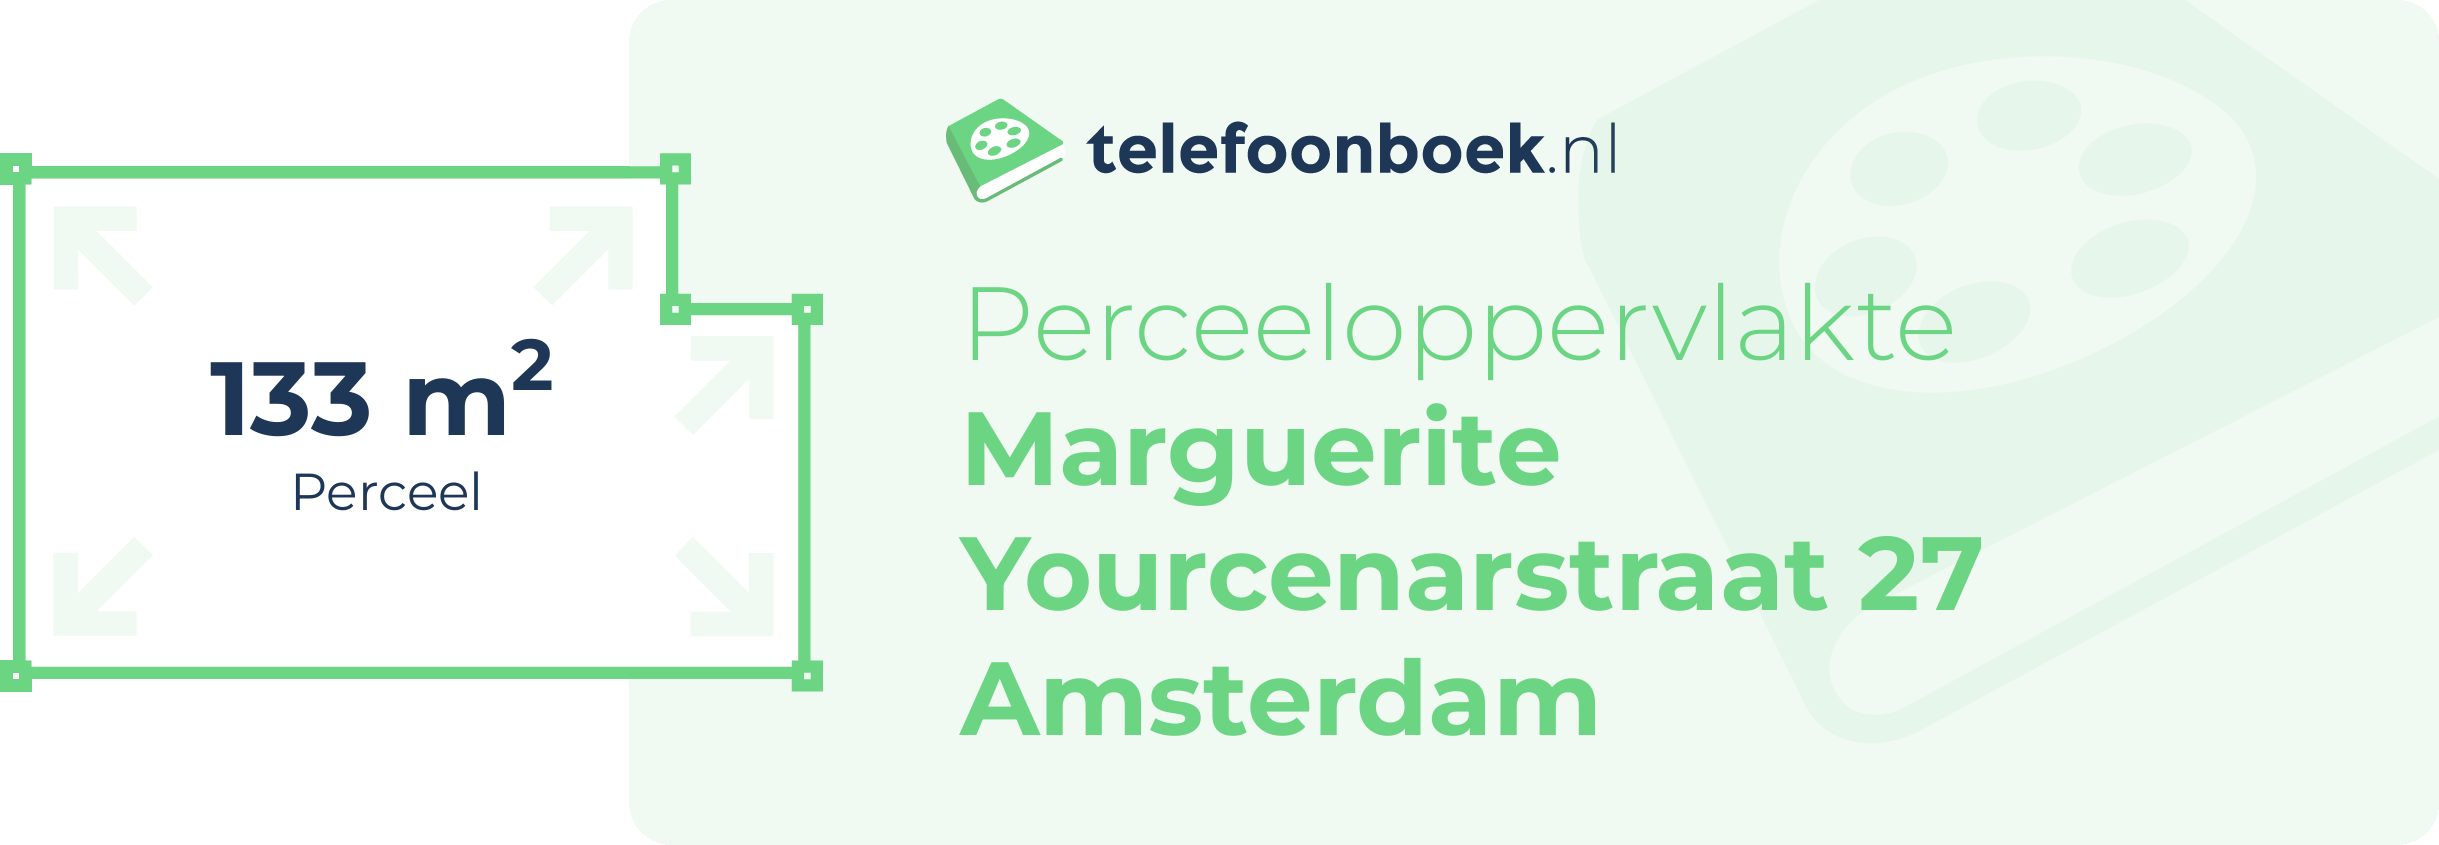 Perceeloppervlakte Marguerite Yourcenarstraat 27 Amsterdam